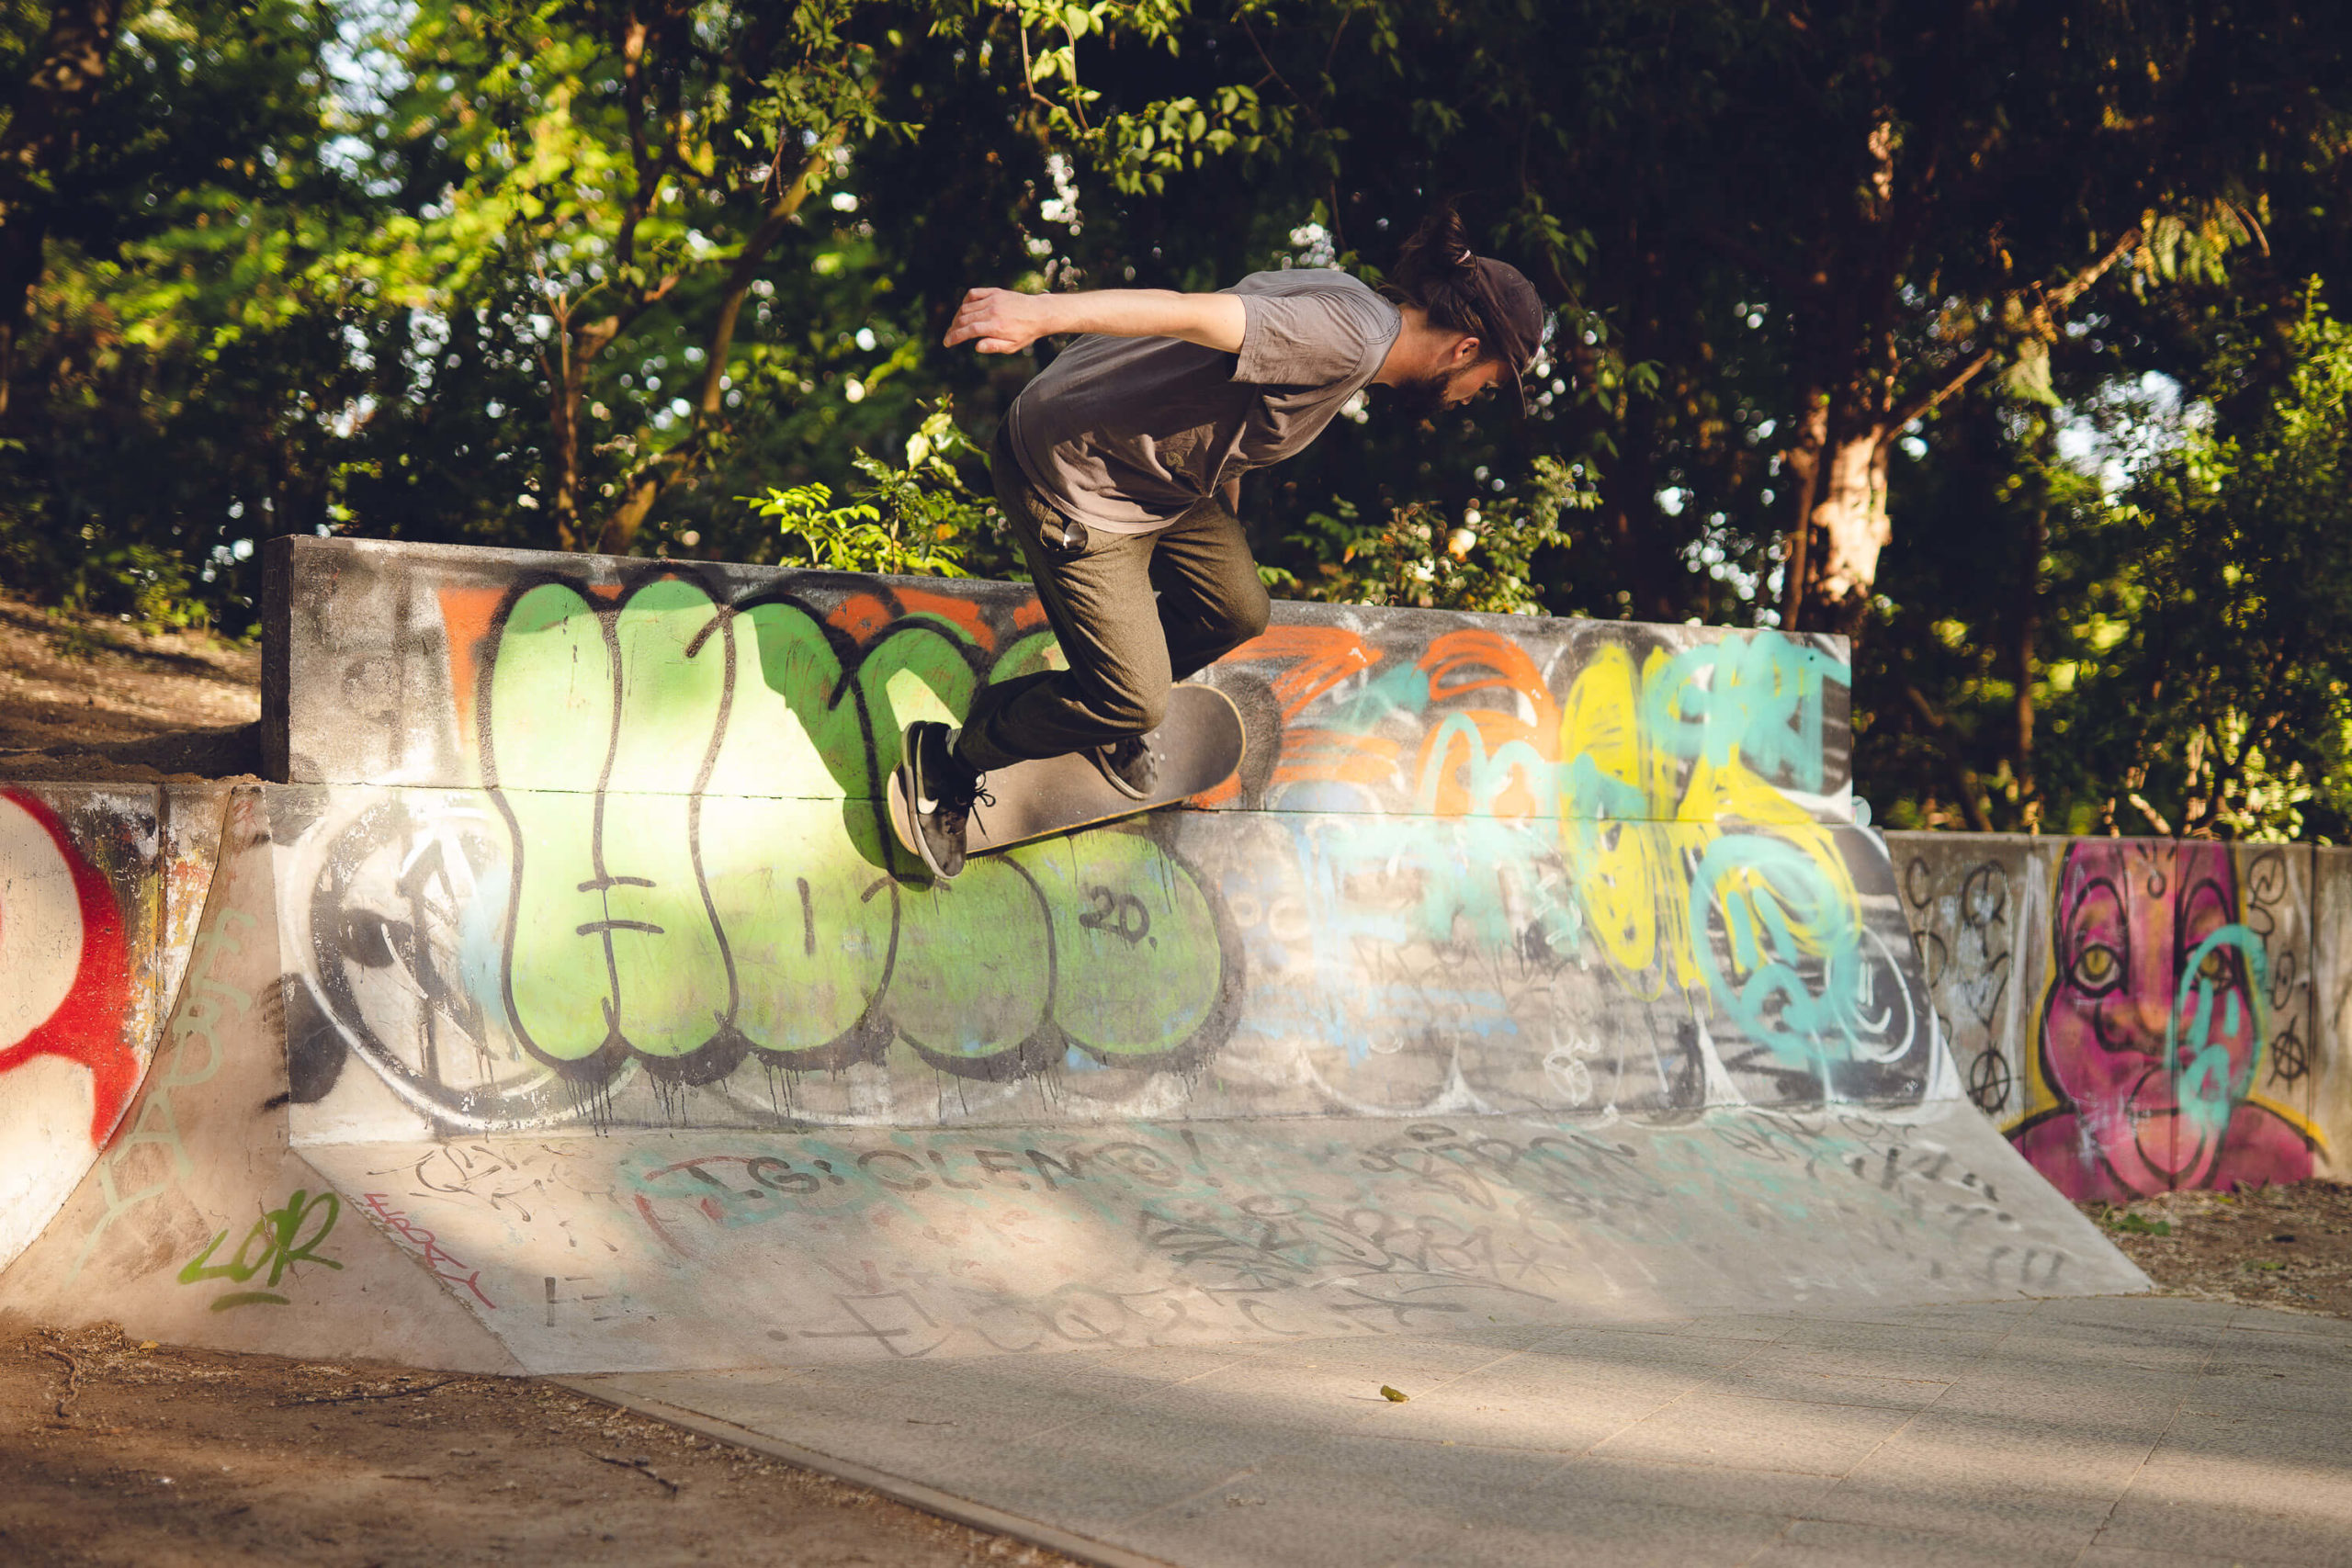 musician Finn of band Auburn light drives skate board on wall in skate park Berlin